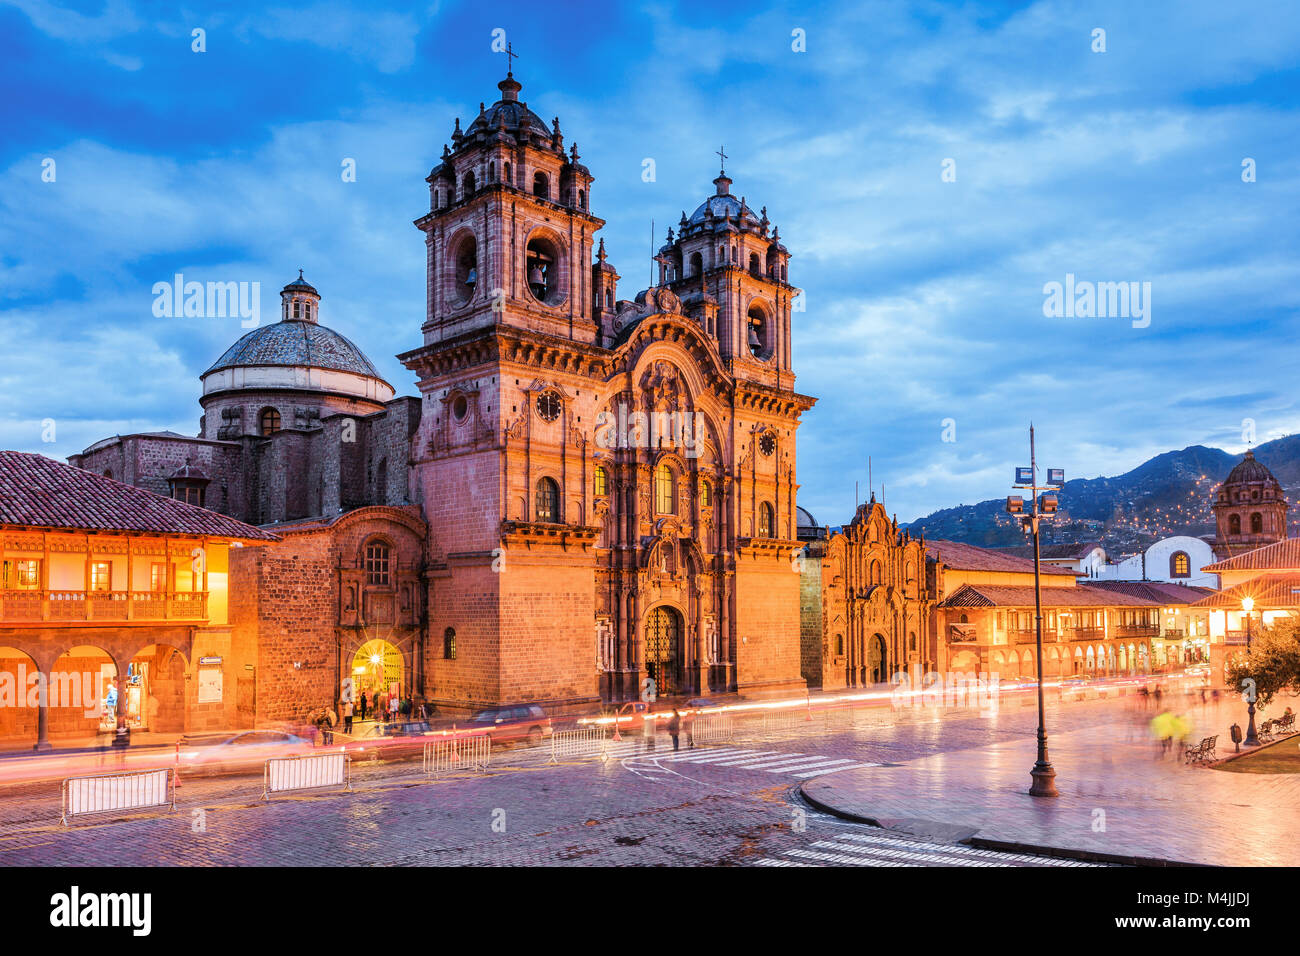 Plaza de Armas of the city of Cusco, Peru. Stock Photo